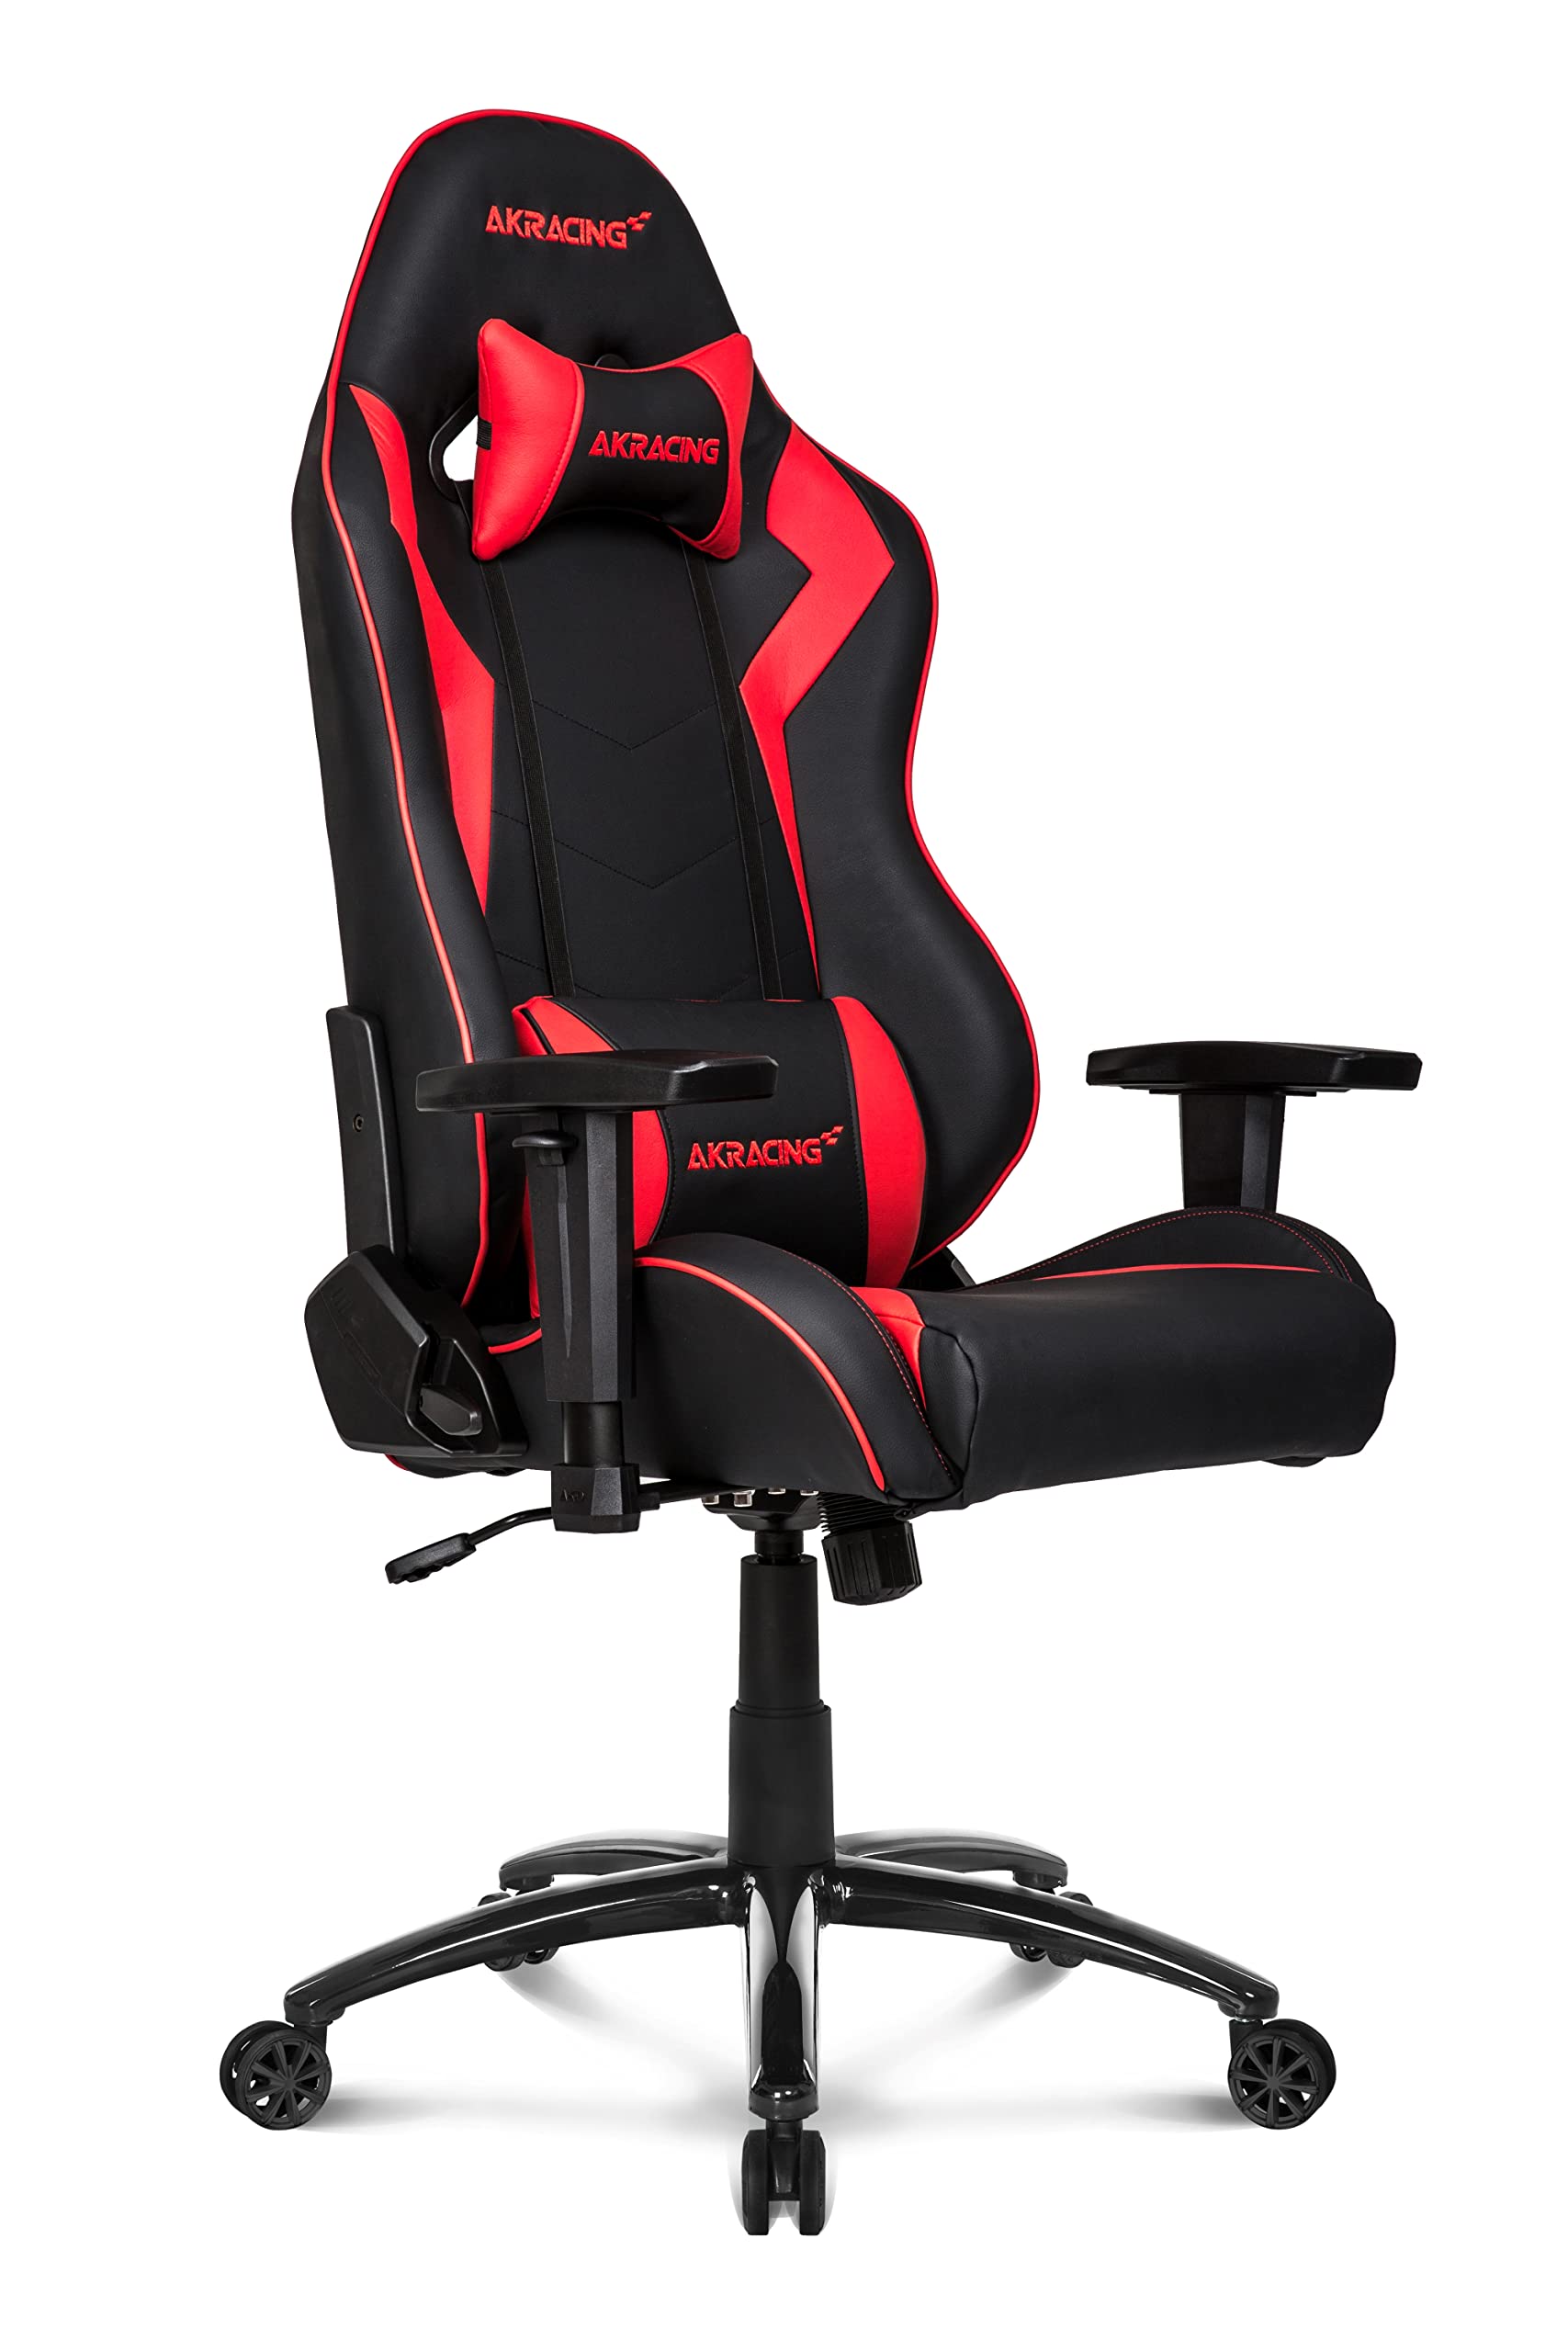 AKRacing Chair Core SX Gaming Stuhl, PU-Kunstleder, Schwarz/Rot, 5 Jahre Herstellergarantie